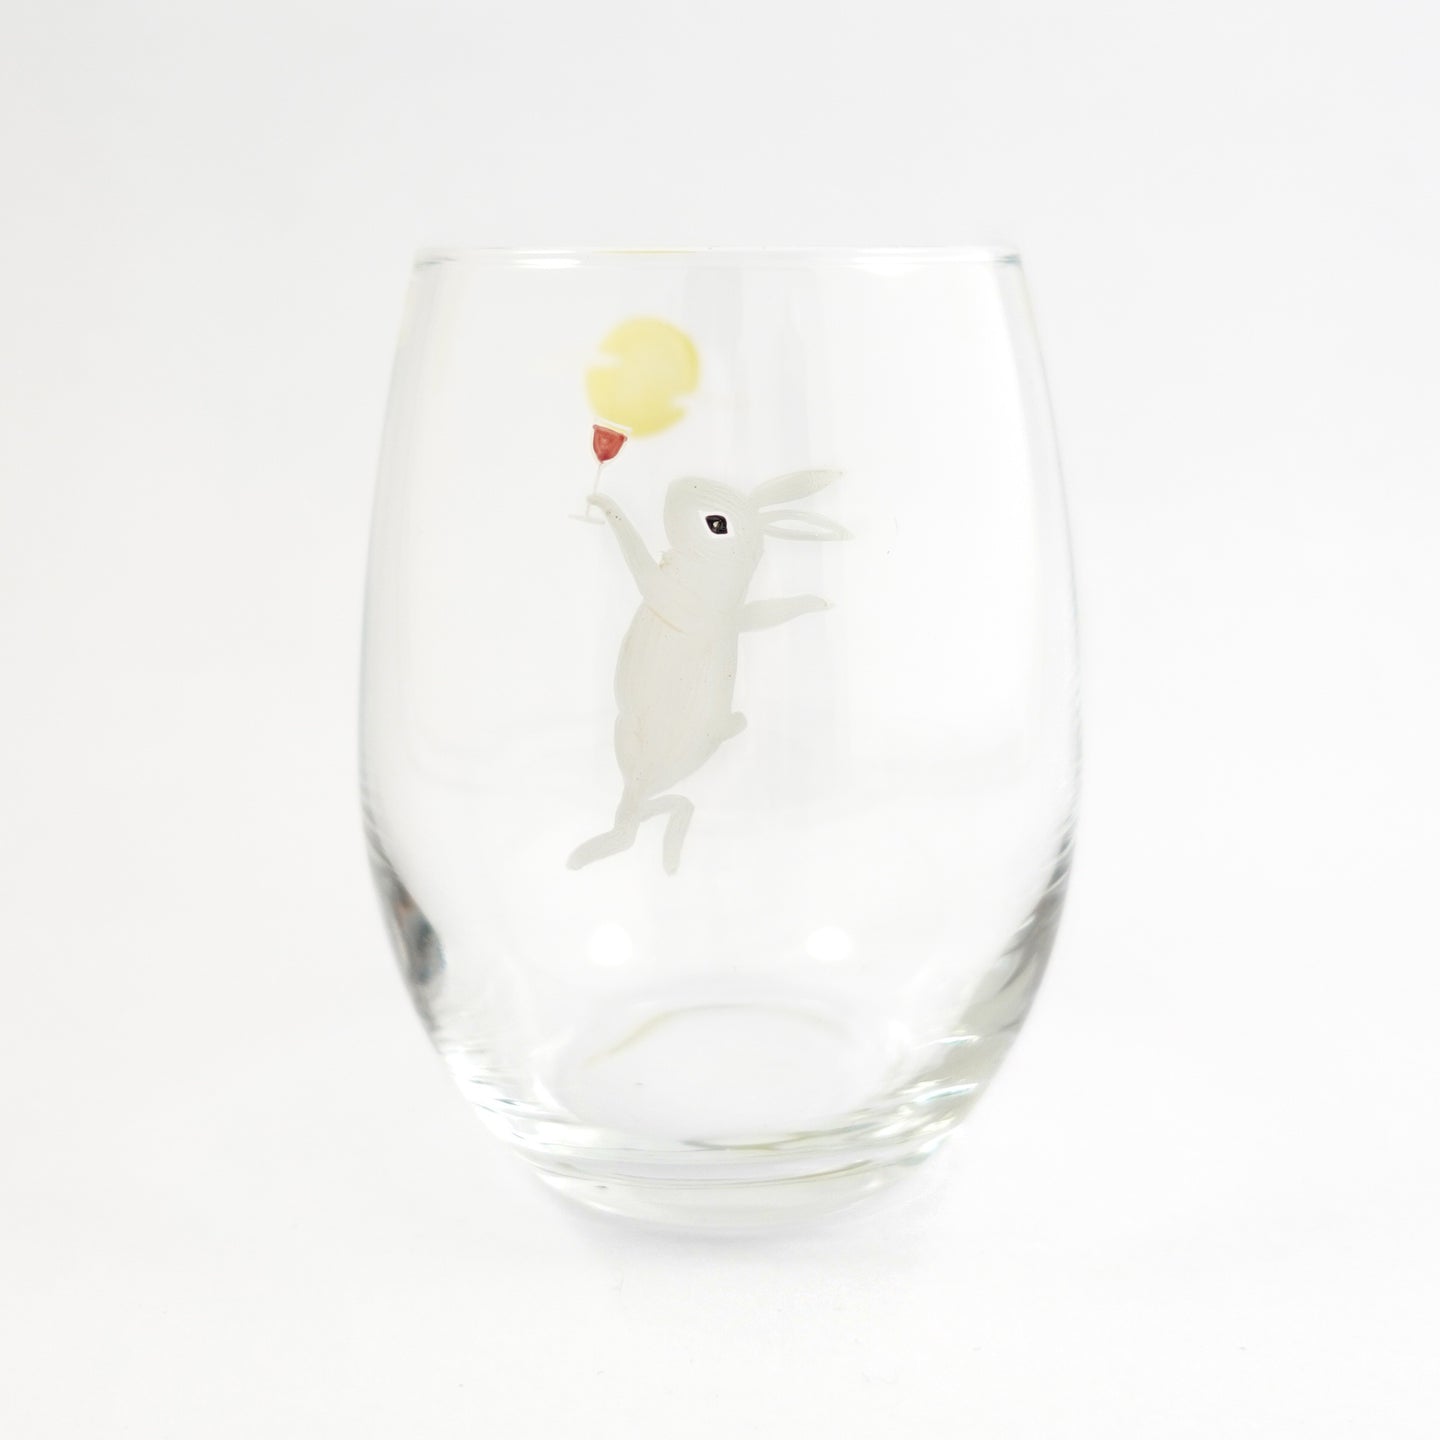 月うさぎ白 - THE GLASS GIFT SHOP SOKICHI